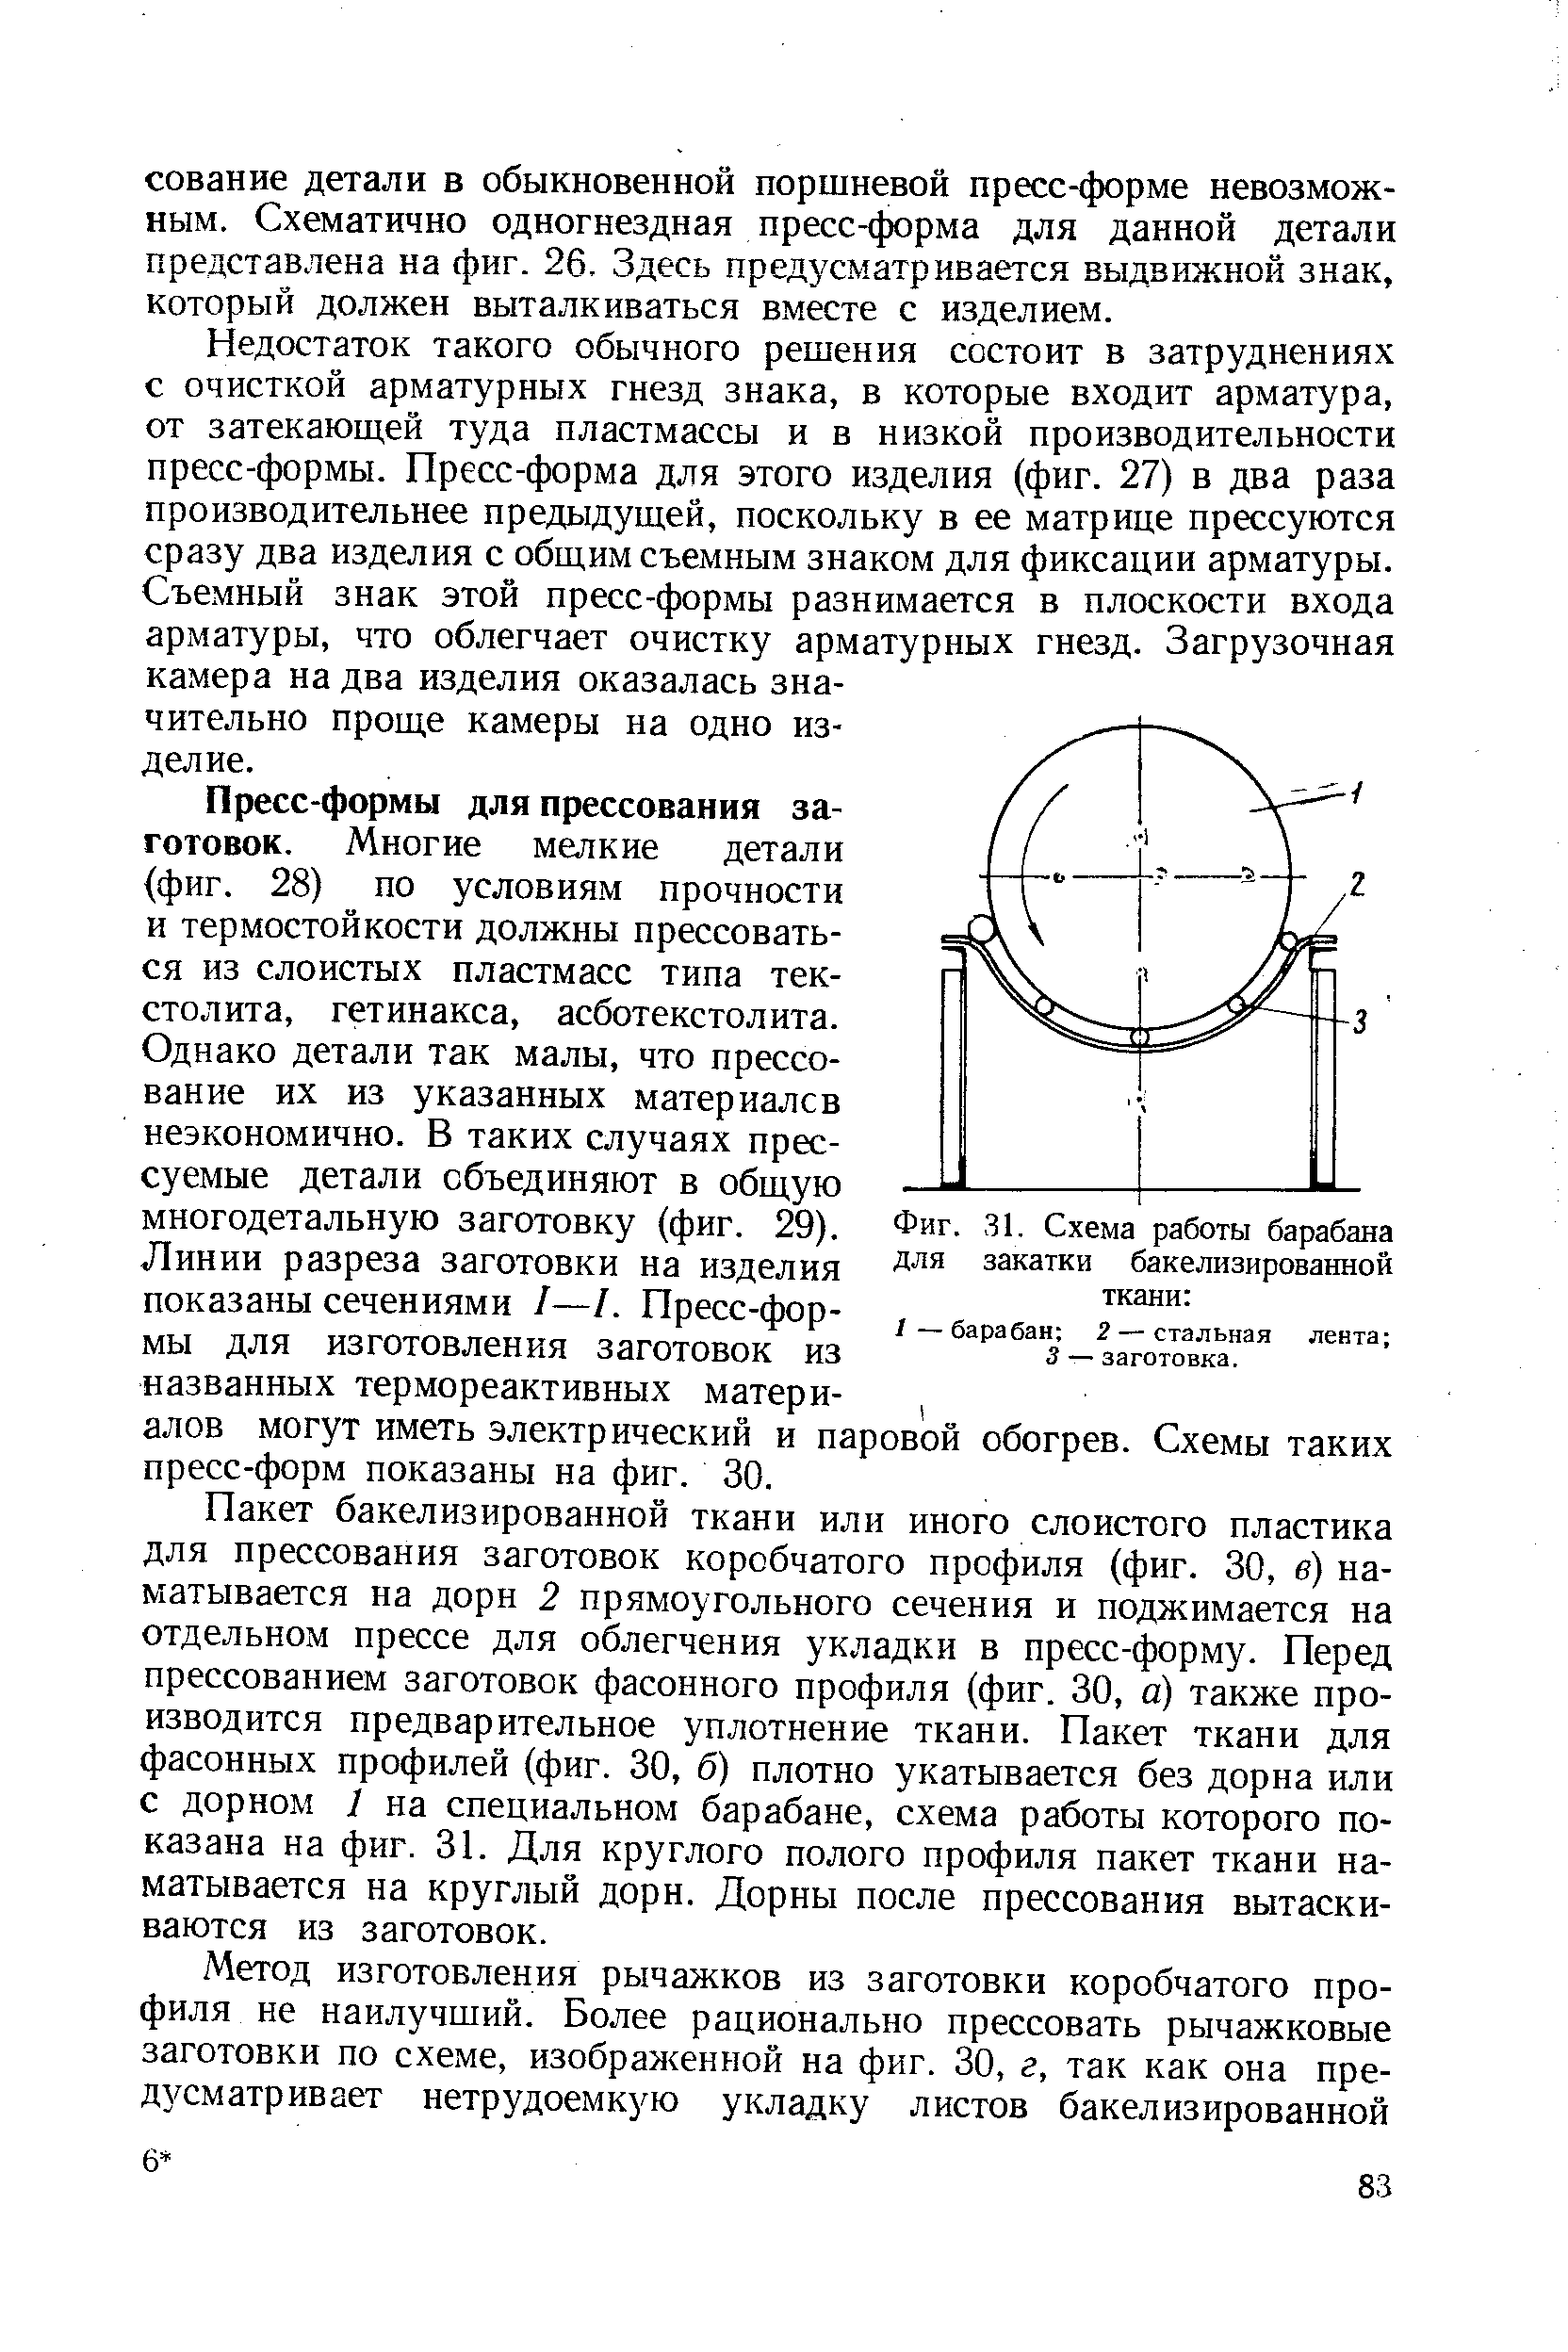 Фиг. 31. Схема работы барабана для закатки бакелизированной ткани 
